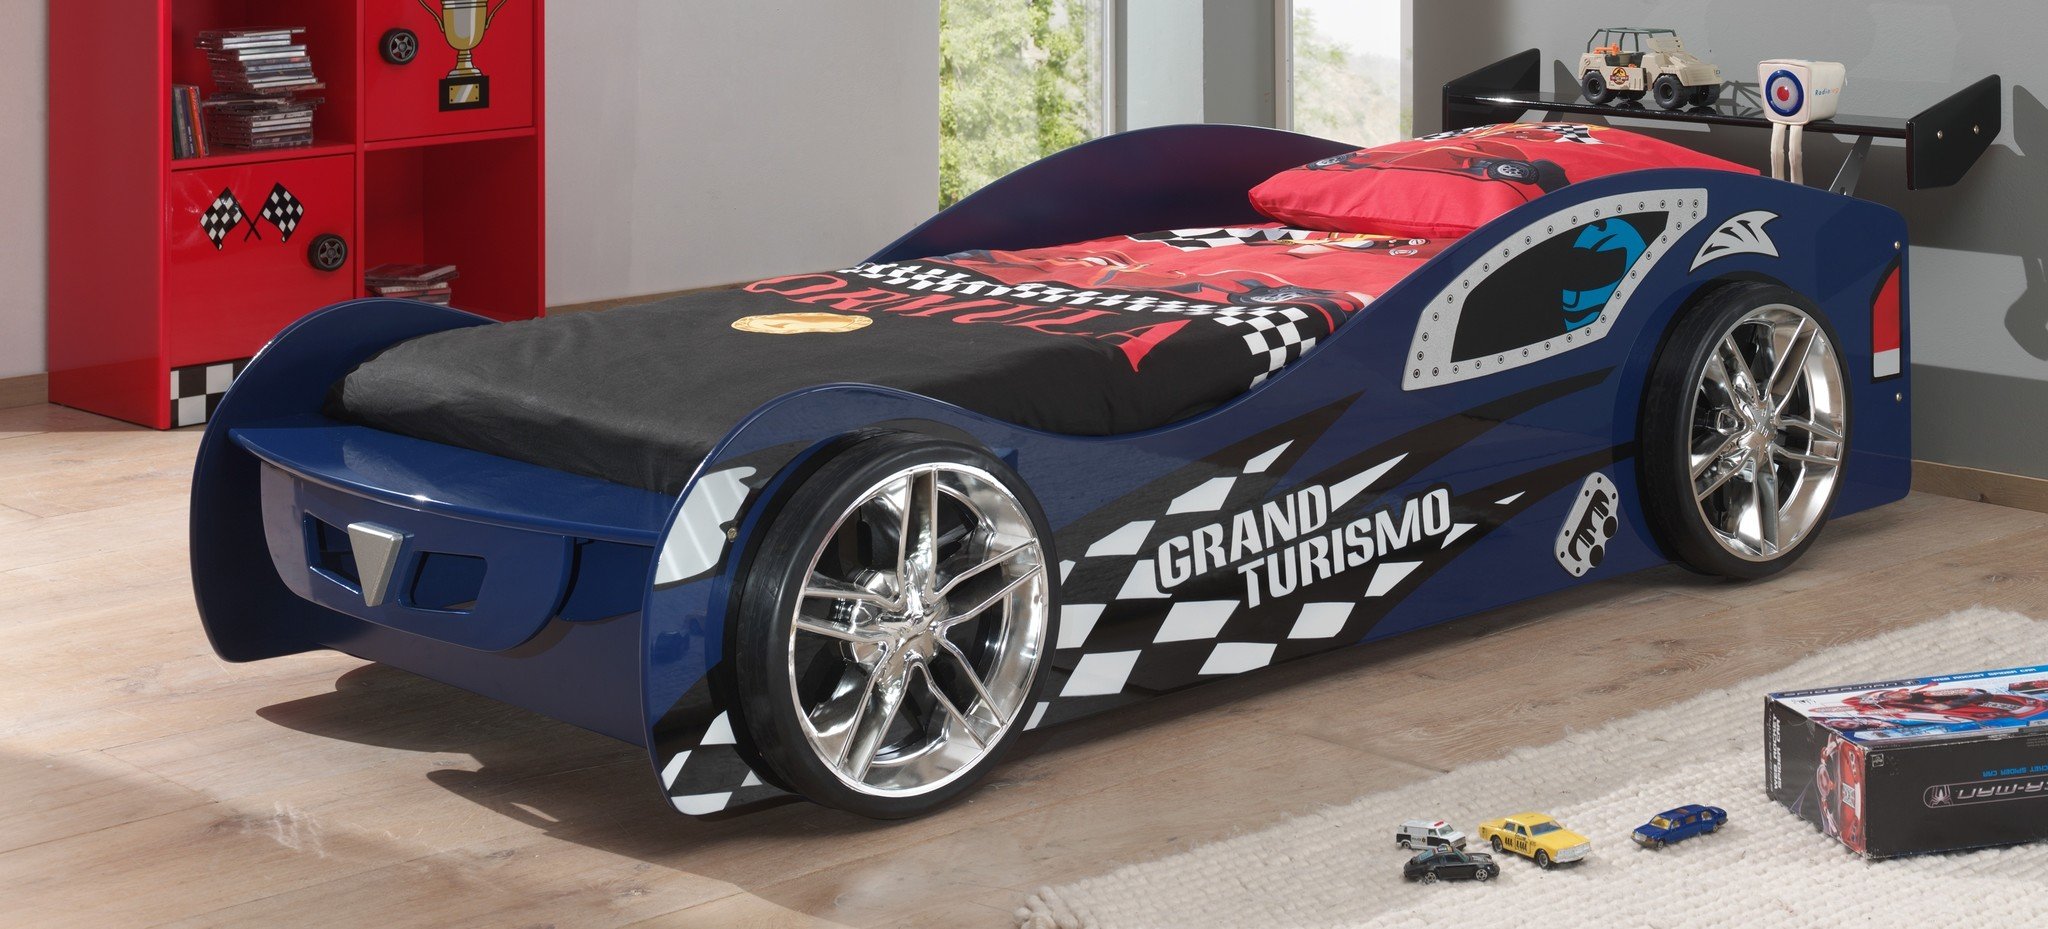 Autobed Blauw Grand Turismo 90x200 - Laagste prijs garantie! - Kinderkamerwebwinkel.nl